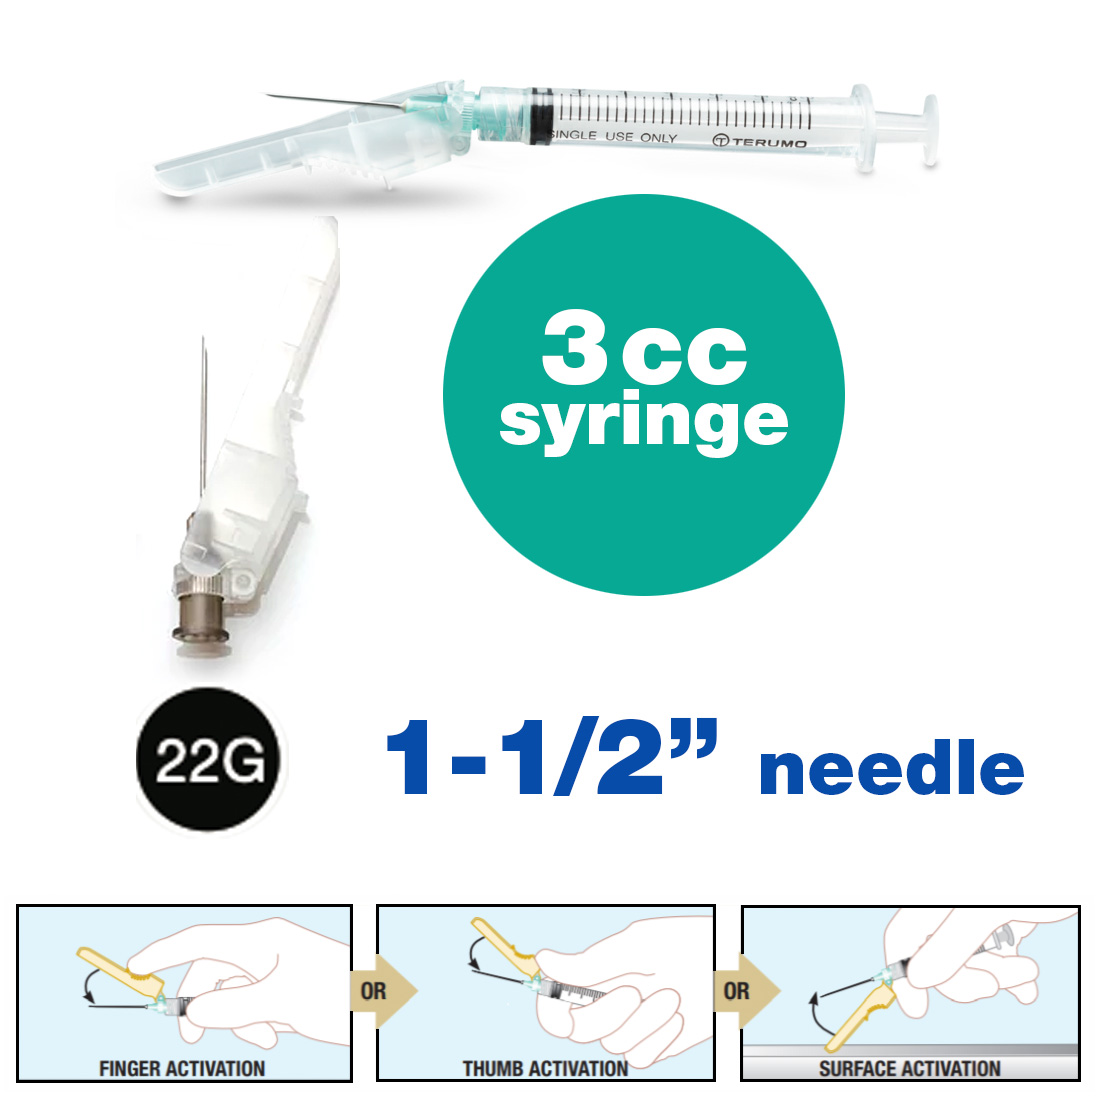 SurGuard® 3 Safety Hypodermic Needle, 3CC Syringe with 22G x 1 1/2" Needle - 100/Box